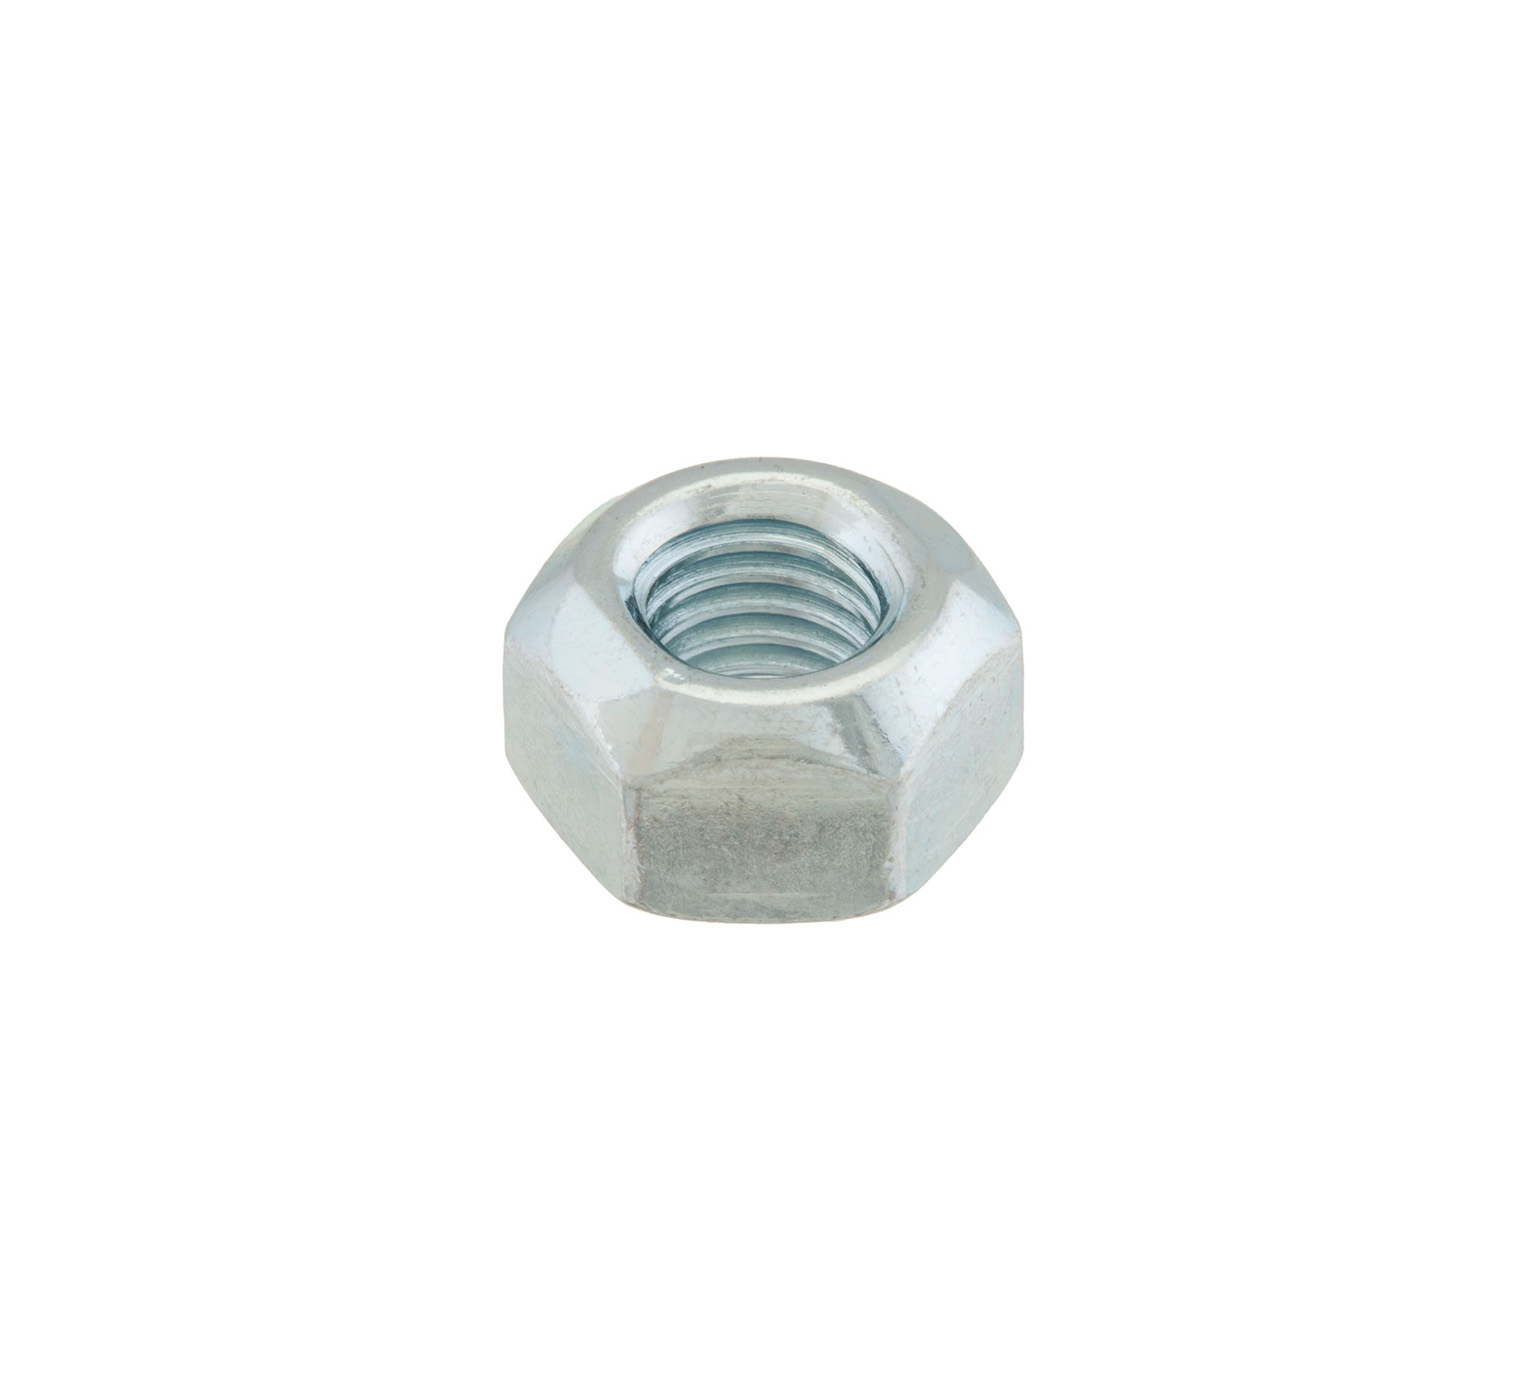 08166 Écrou hexagonal en acier - Filetage M10 x 0,394 po / 1 cm alt 1